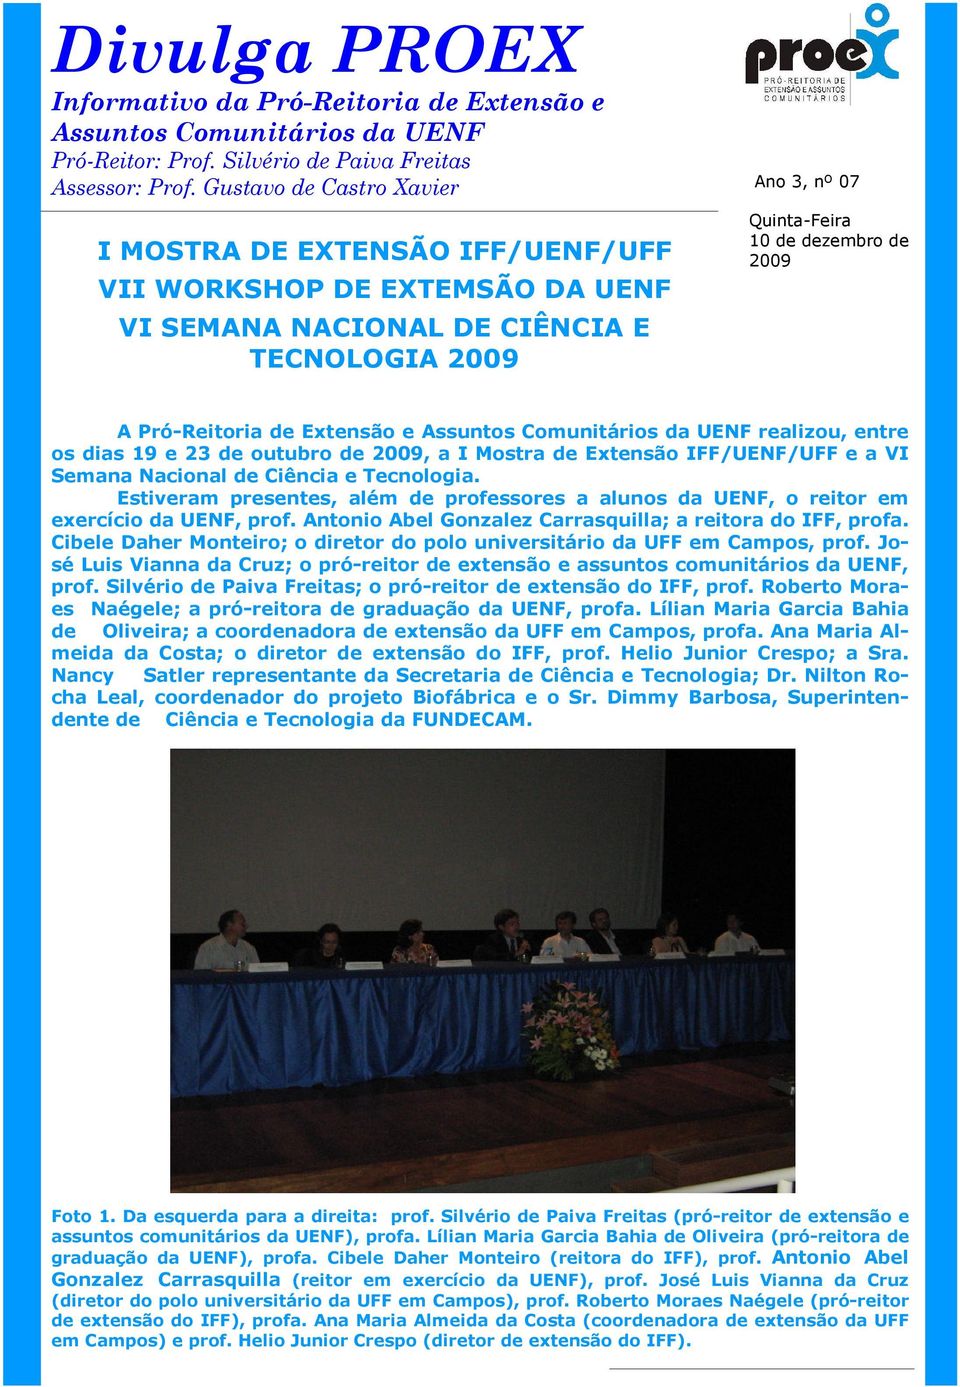 Pró-Reitoria de Extensão e Assuntos Comunitários da UENF realizou, entre os dias 19 e 23 de outubro de 2009, a I Mostra de Extensão IFF/UENF/UFF e a VI Semana Nacional de Ciência e Tecnologia.